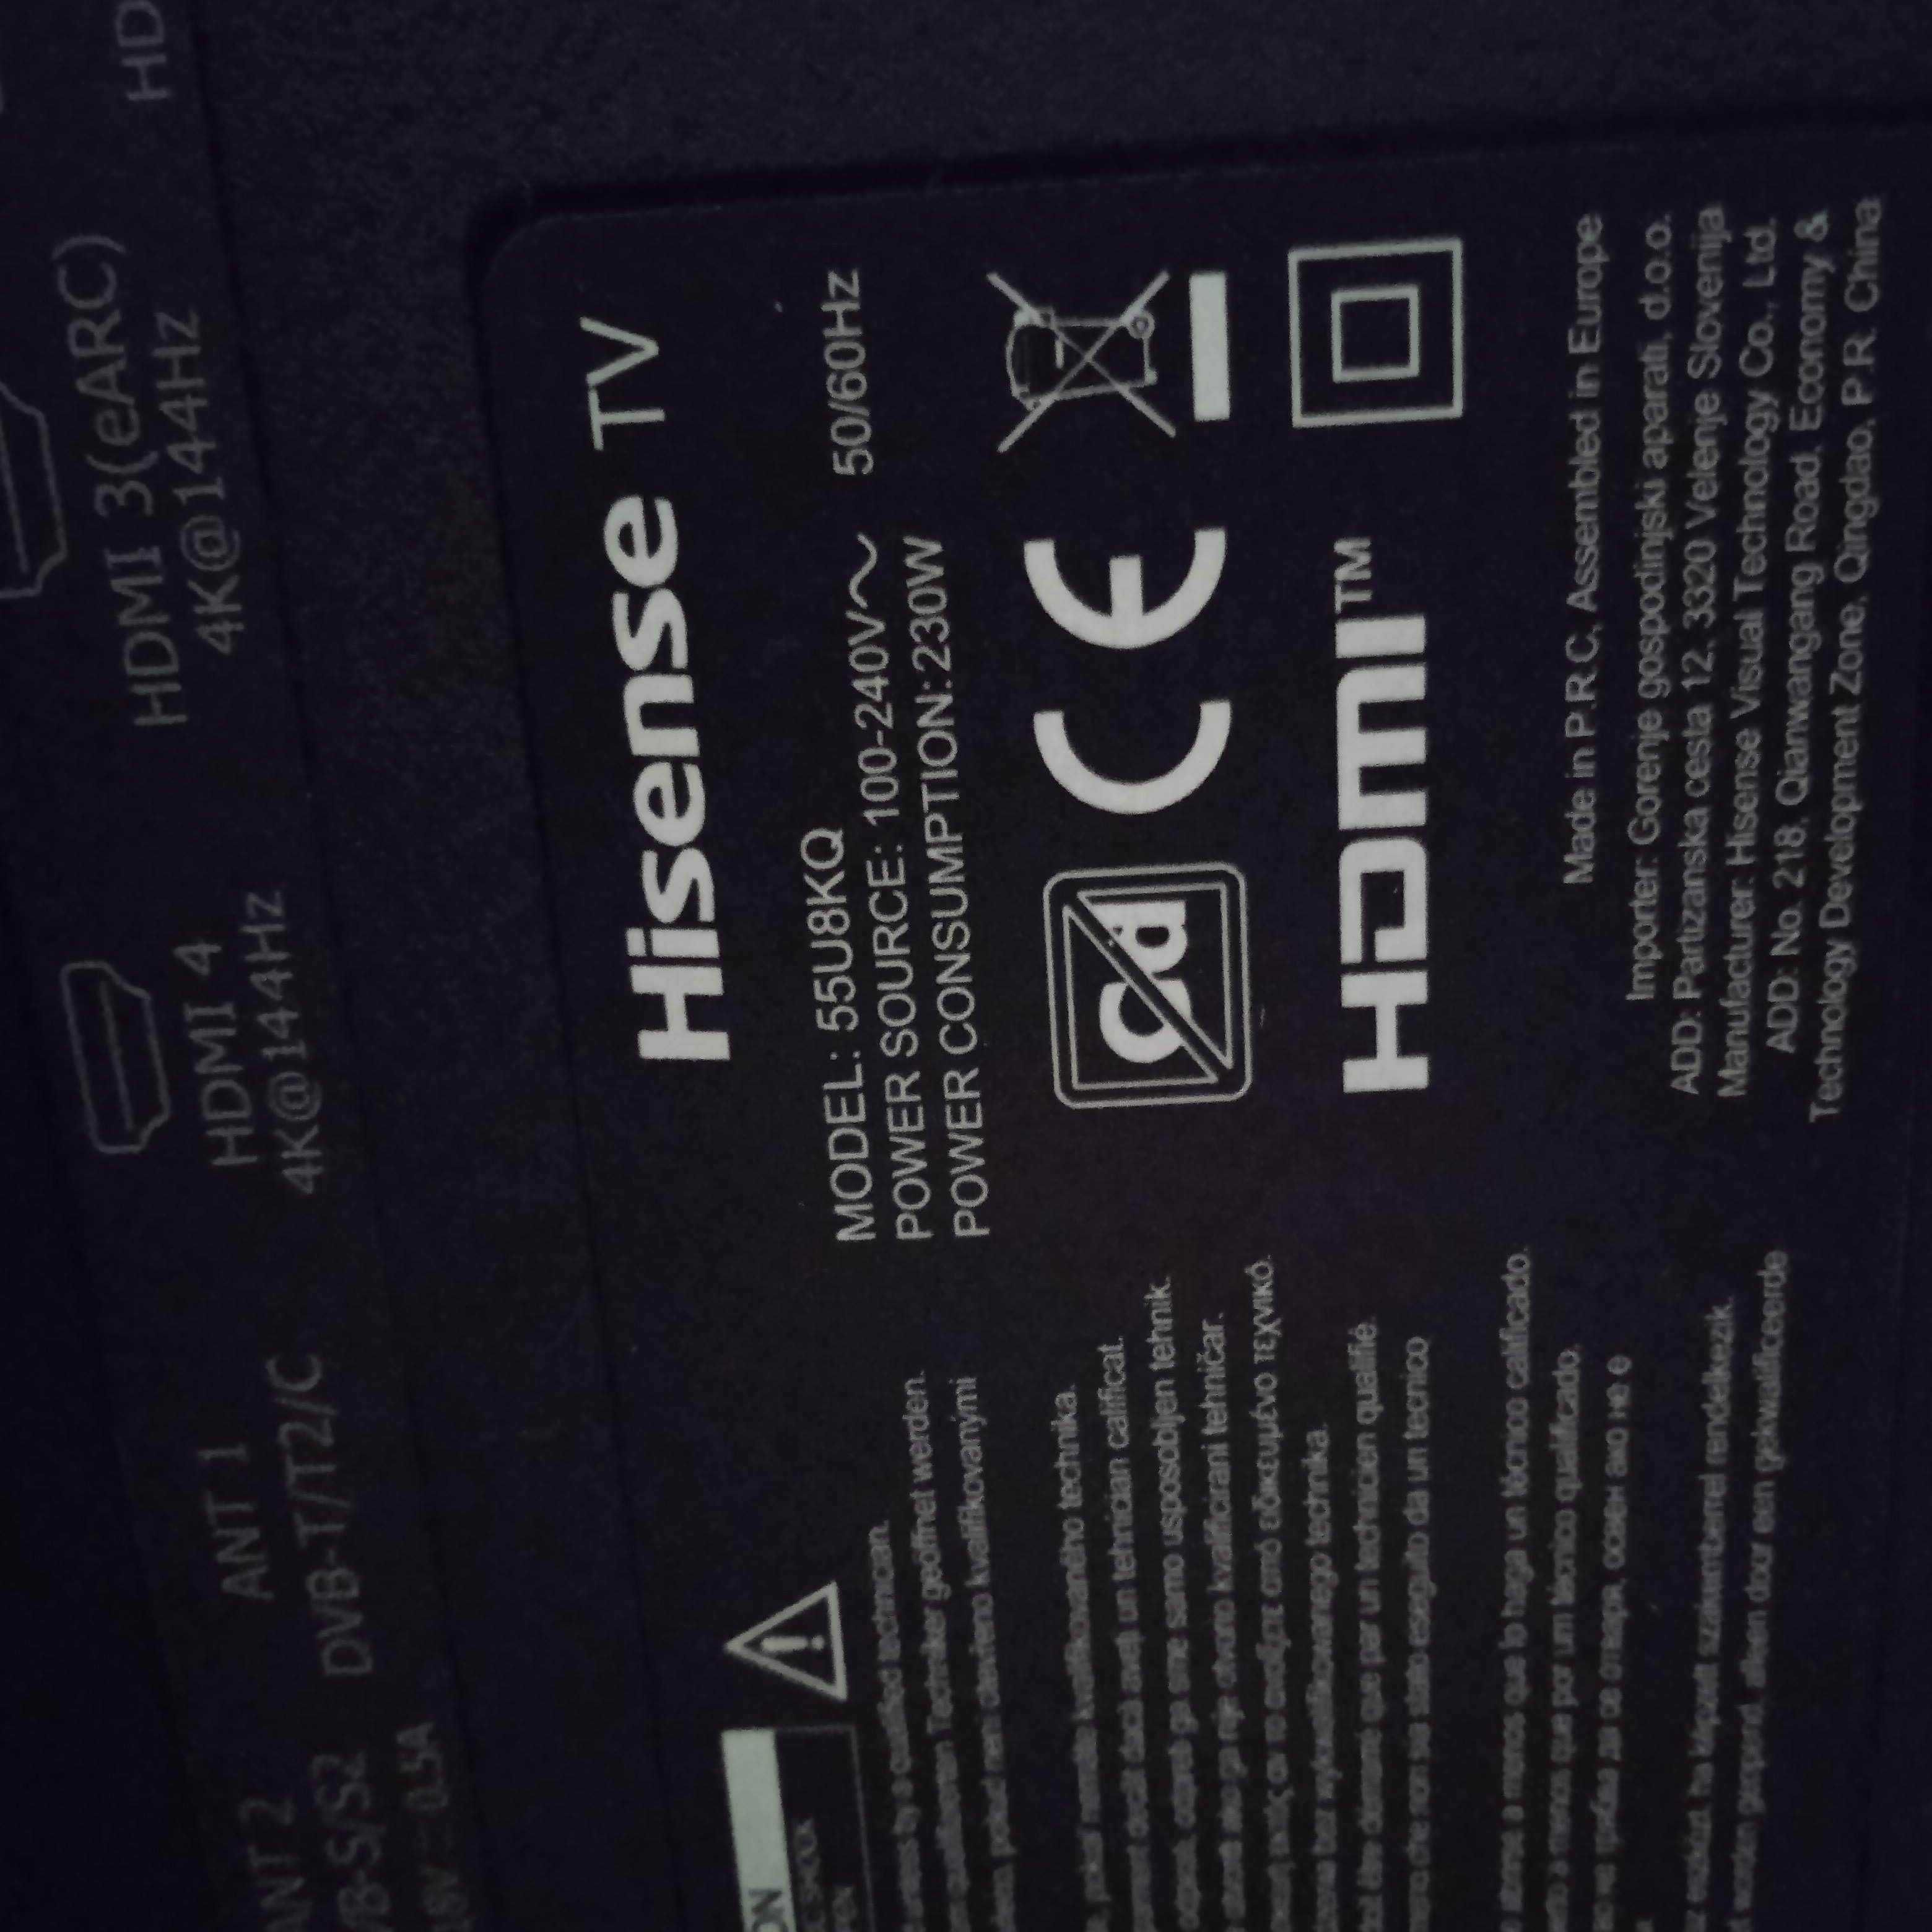 Телевізор Hisense 55U8KQ Mini-LED ULED 4K 144Гц Game Mode Pro,HDR10+